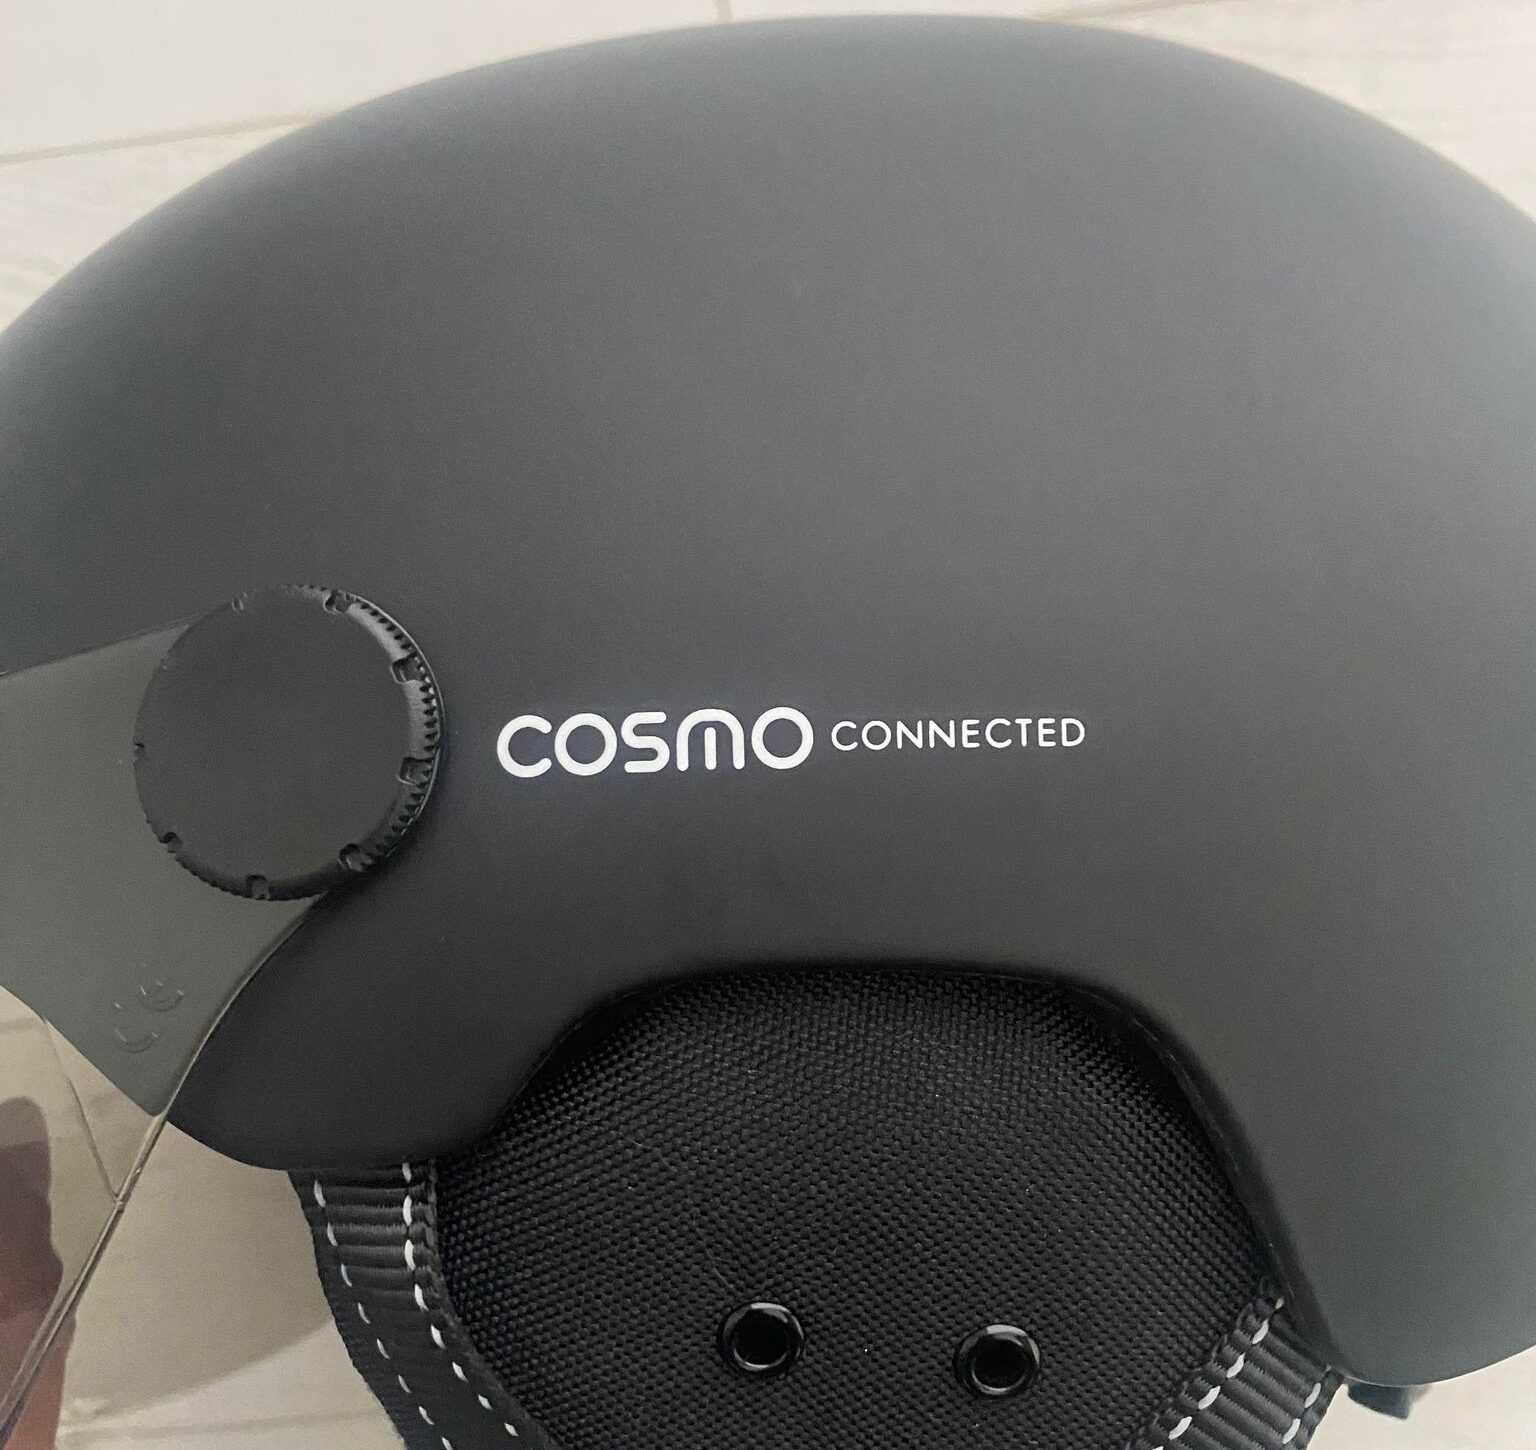 La coque en polycarbonate du Cosmo Fusion